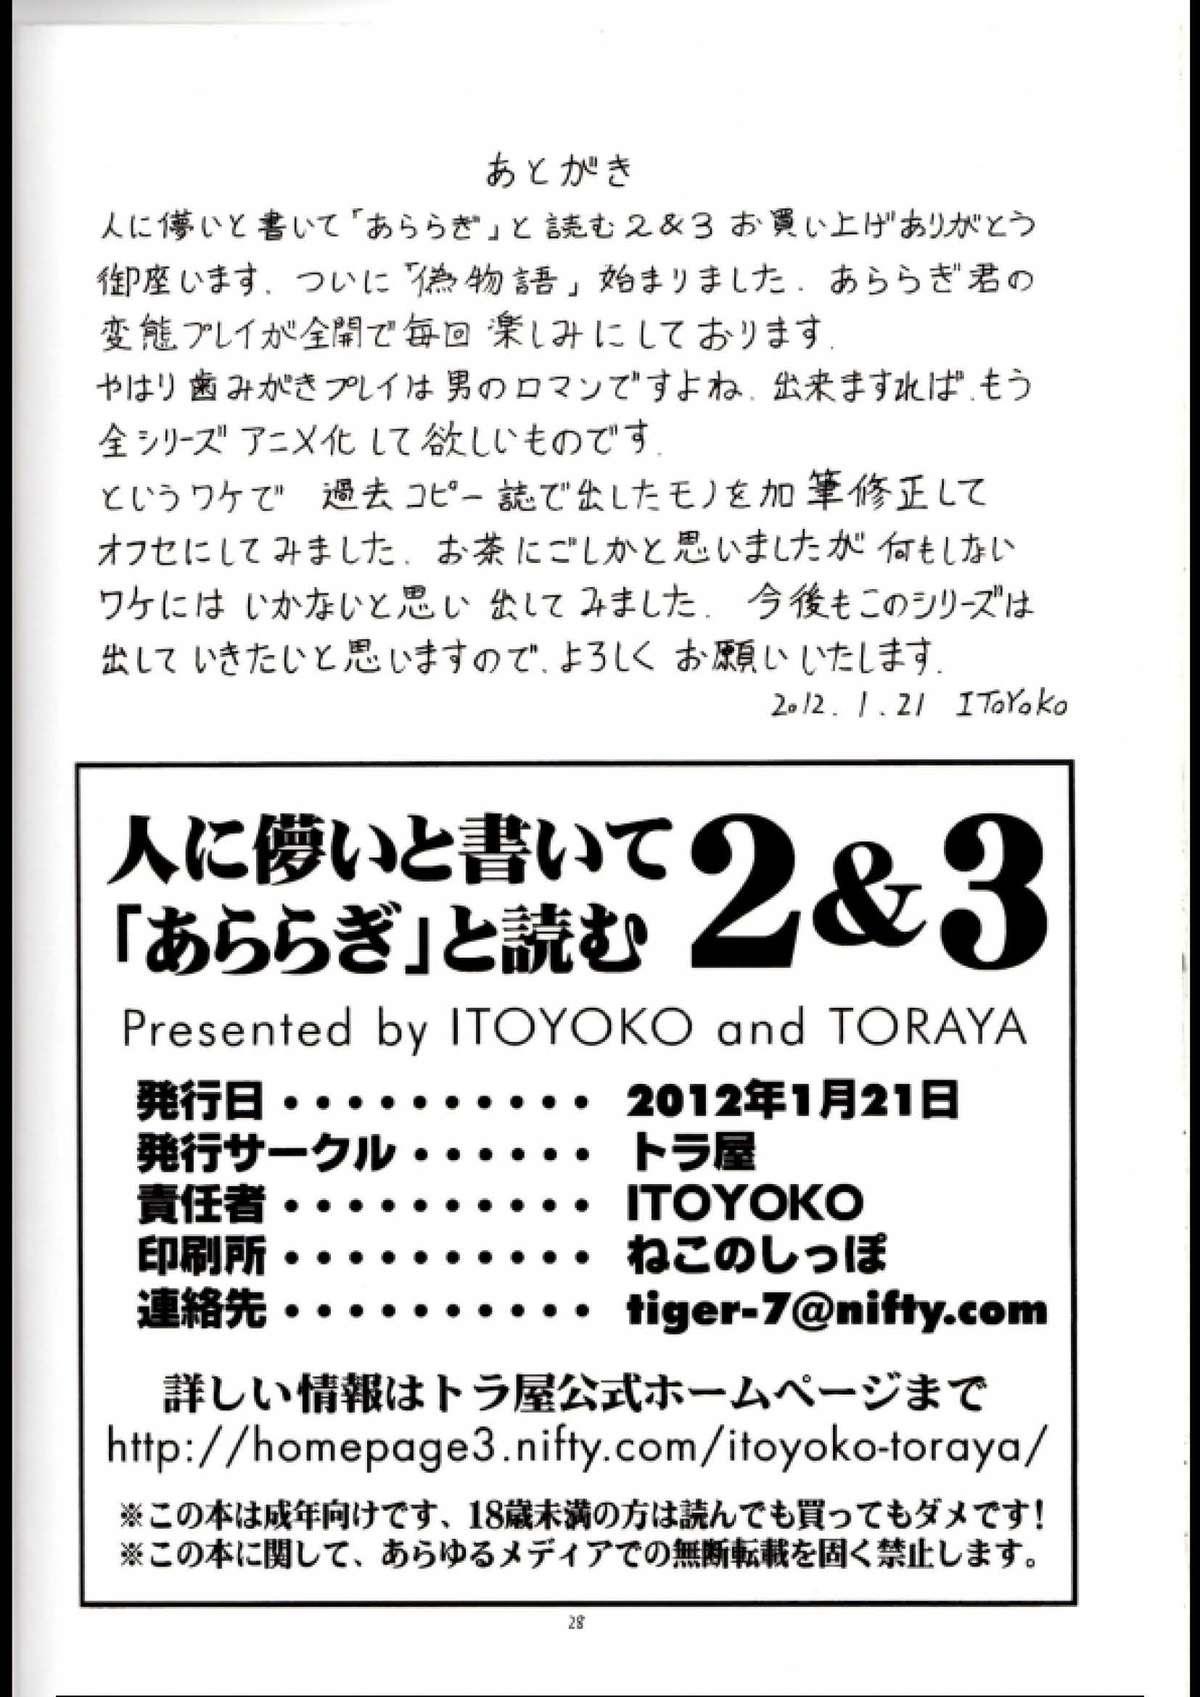 Shoes Hito ni Hakanai to Kaite "Araragi" to Yomu 2&3 - Bakemonogatari Twerk - Page 29